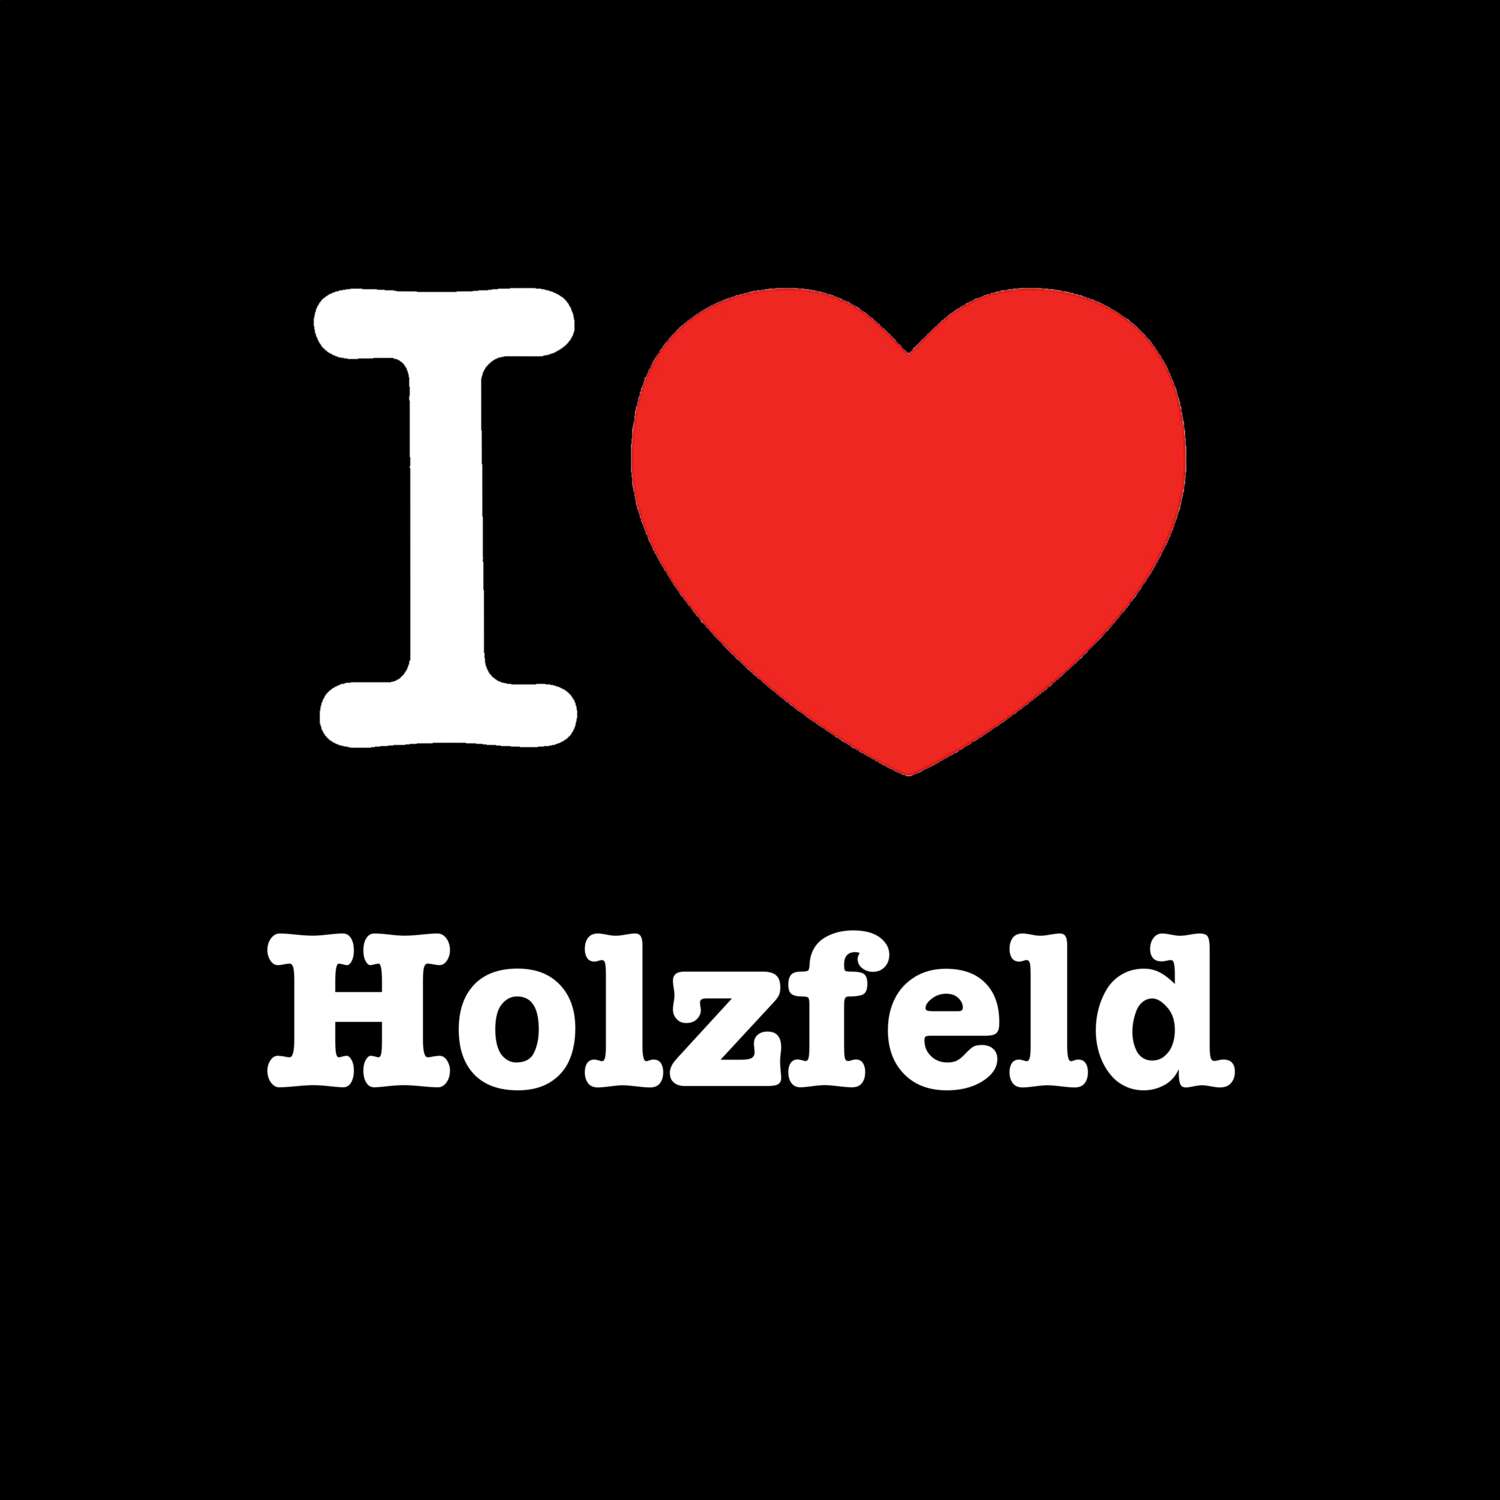 Holzfeld T-Shirt »I love«